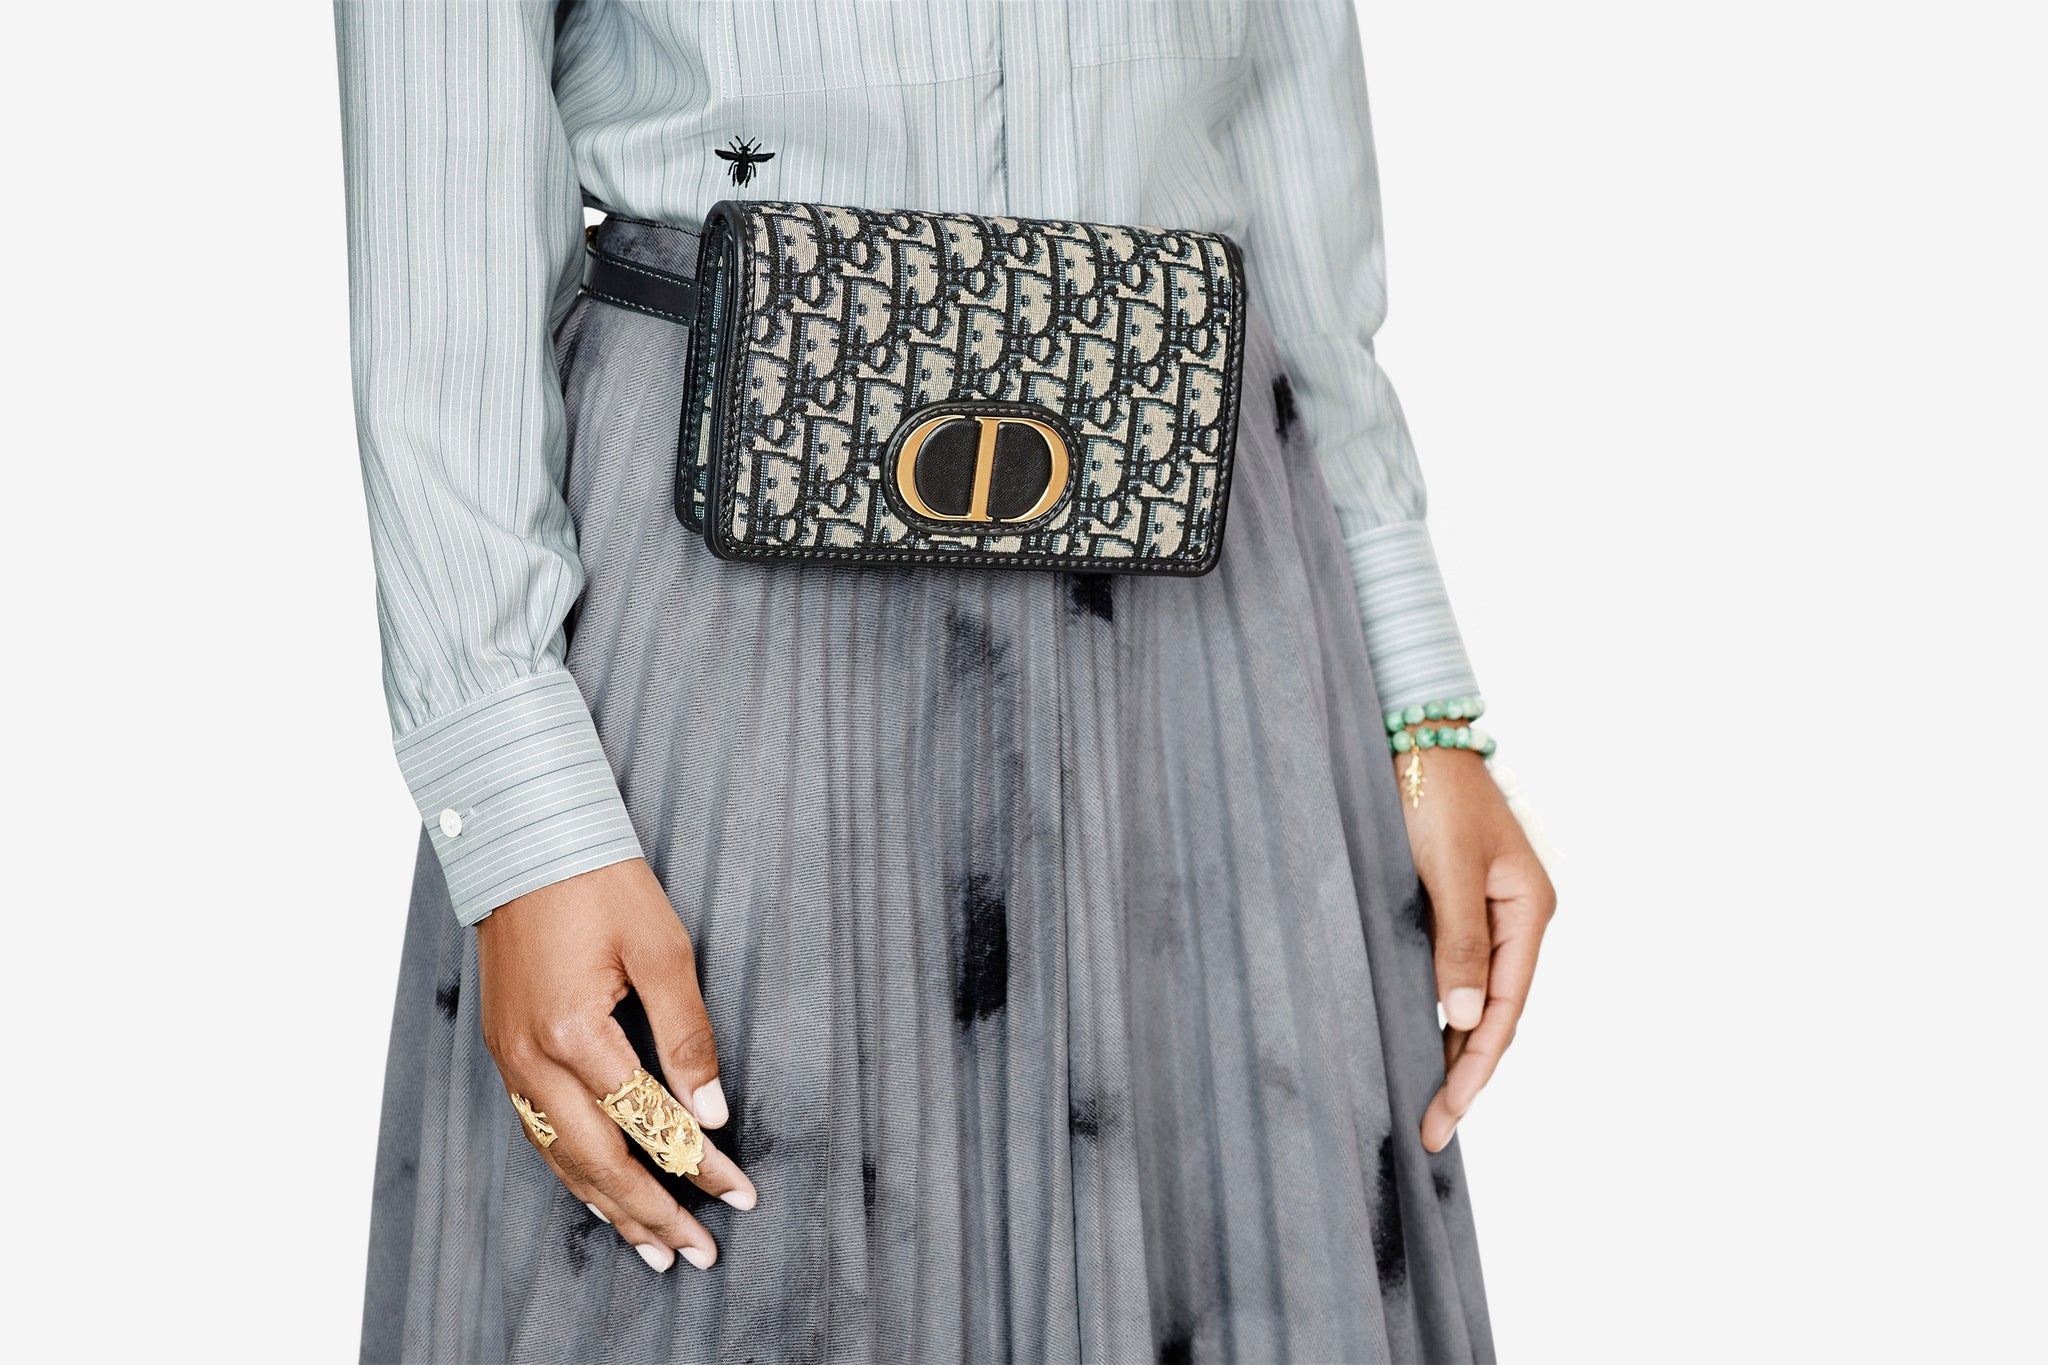 Dior 30 montaigne je nova it torba koju obožavaju trendseterice